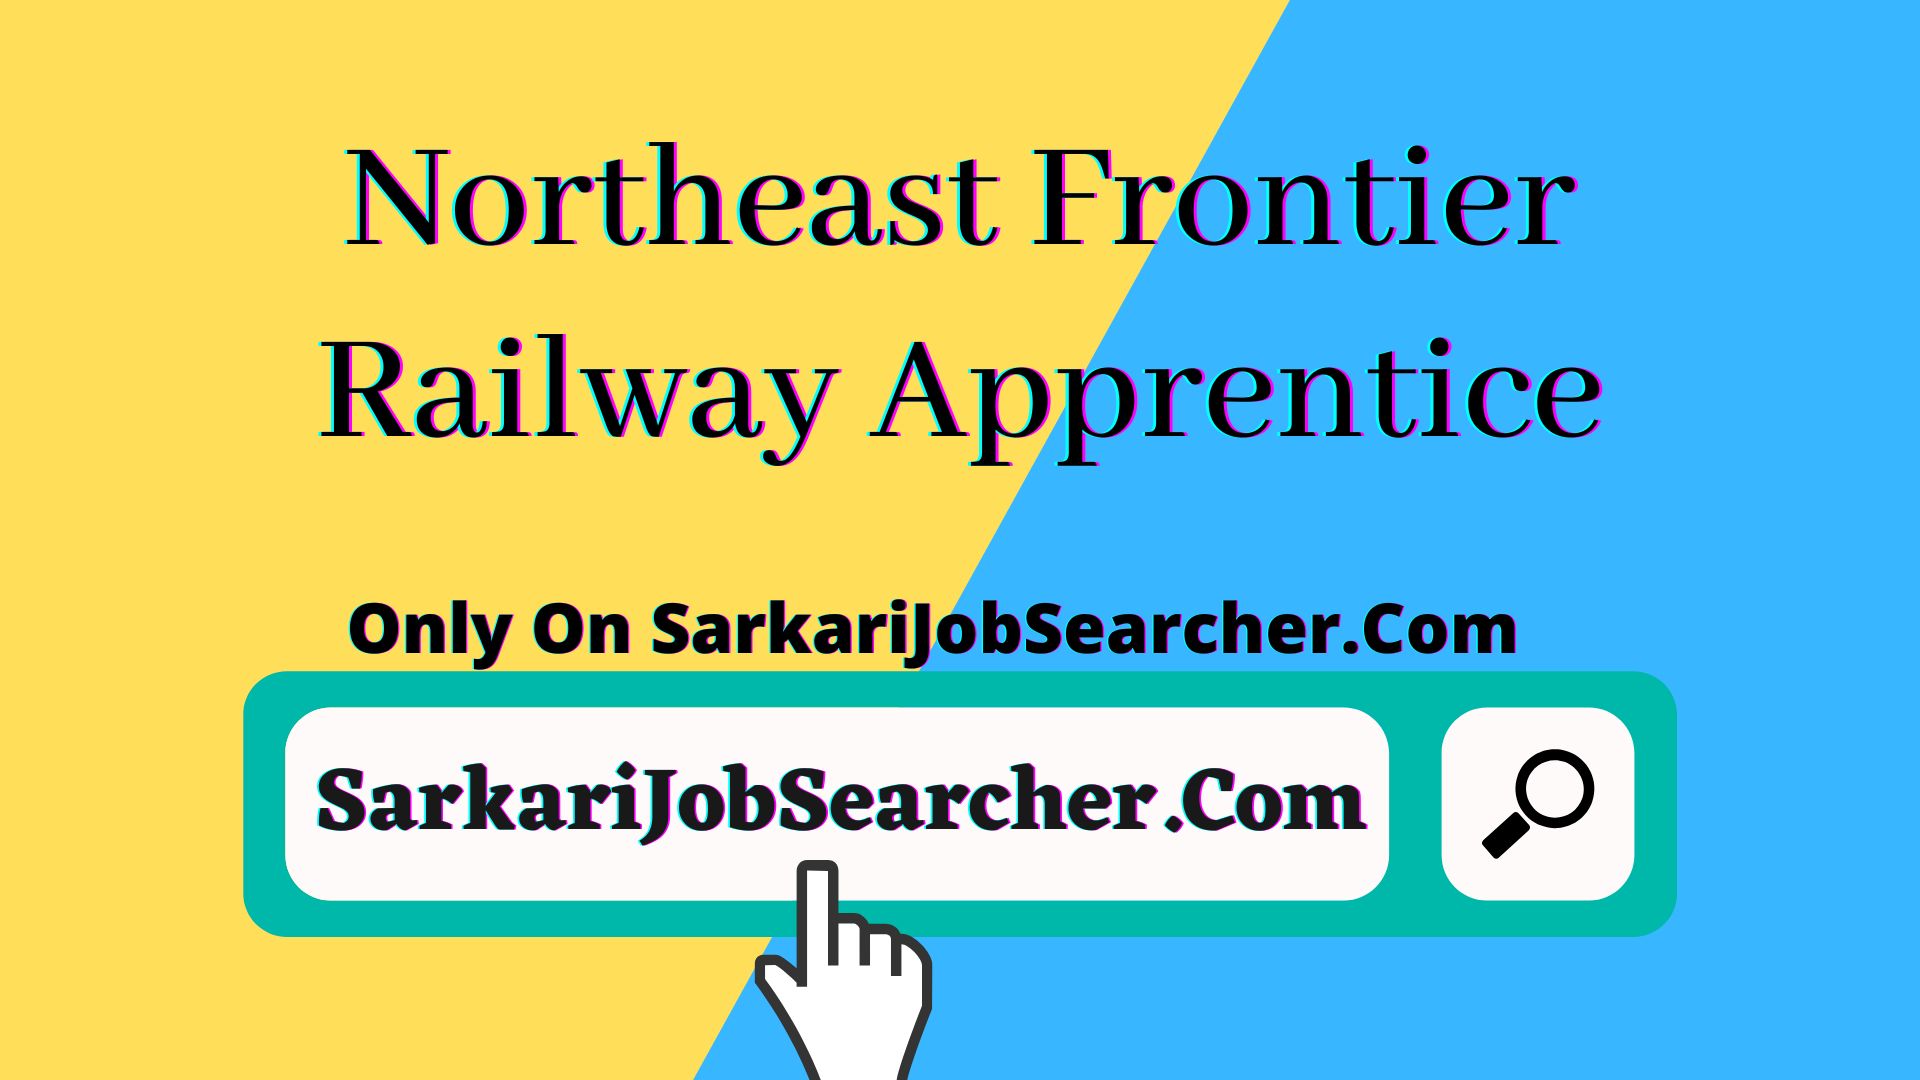 Northeast Frontier Railway Apprentice